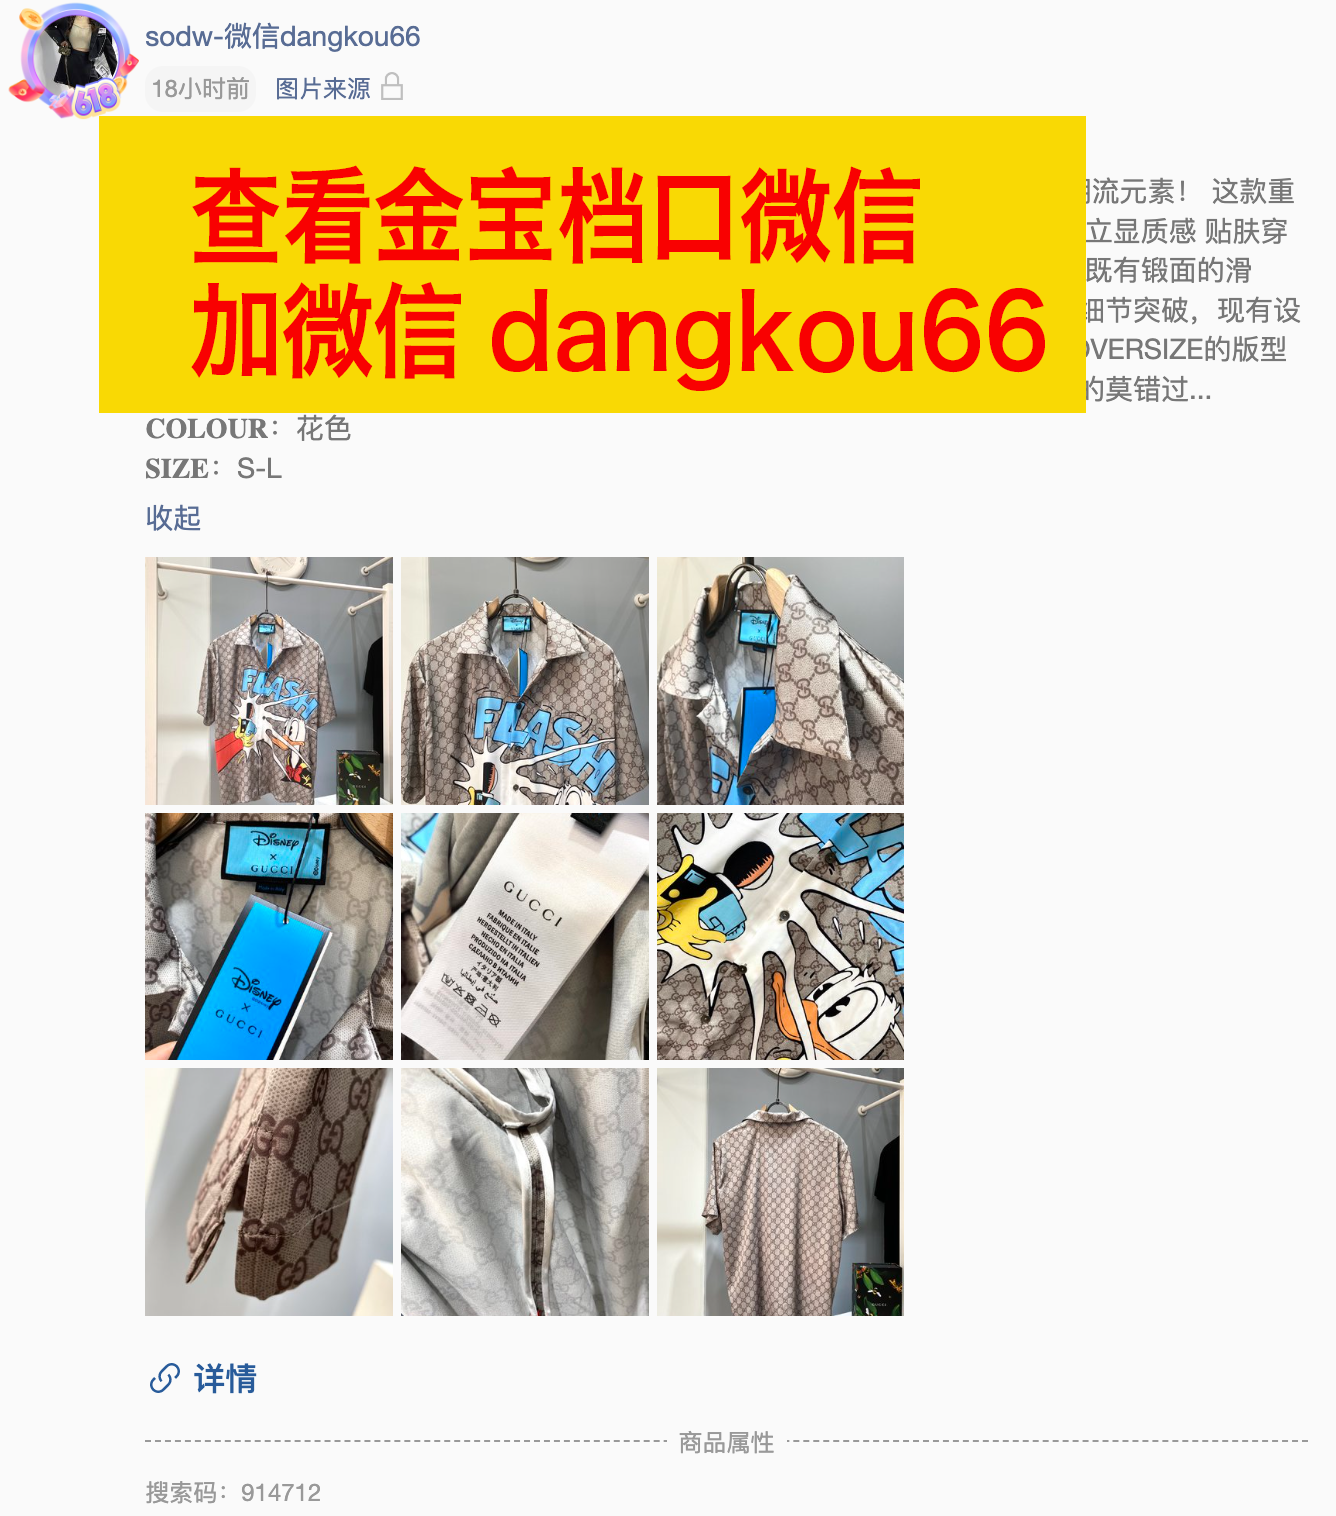 广州站西金宝外贸服装城做gucci衬衫二手奢侈品质量的档口有哪些？